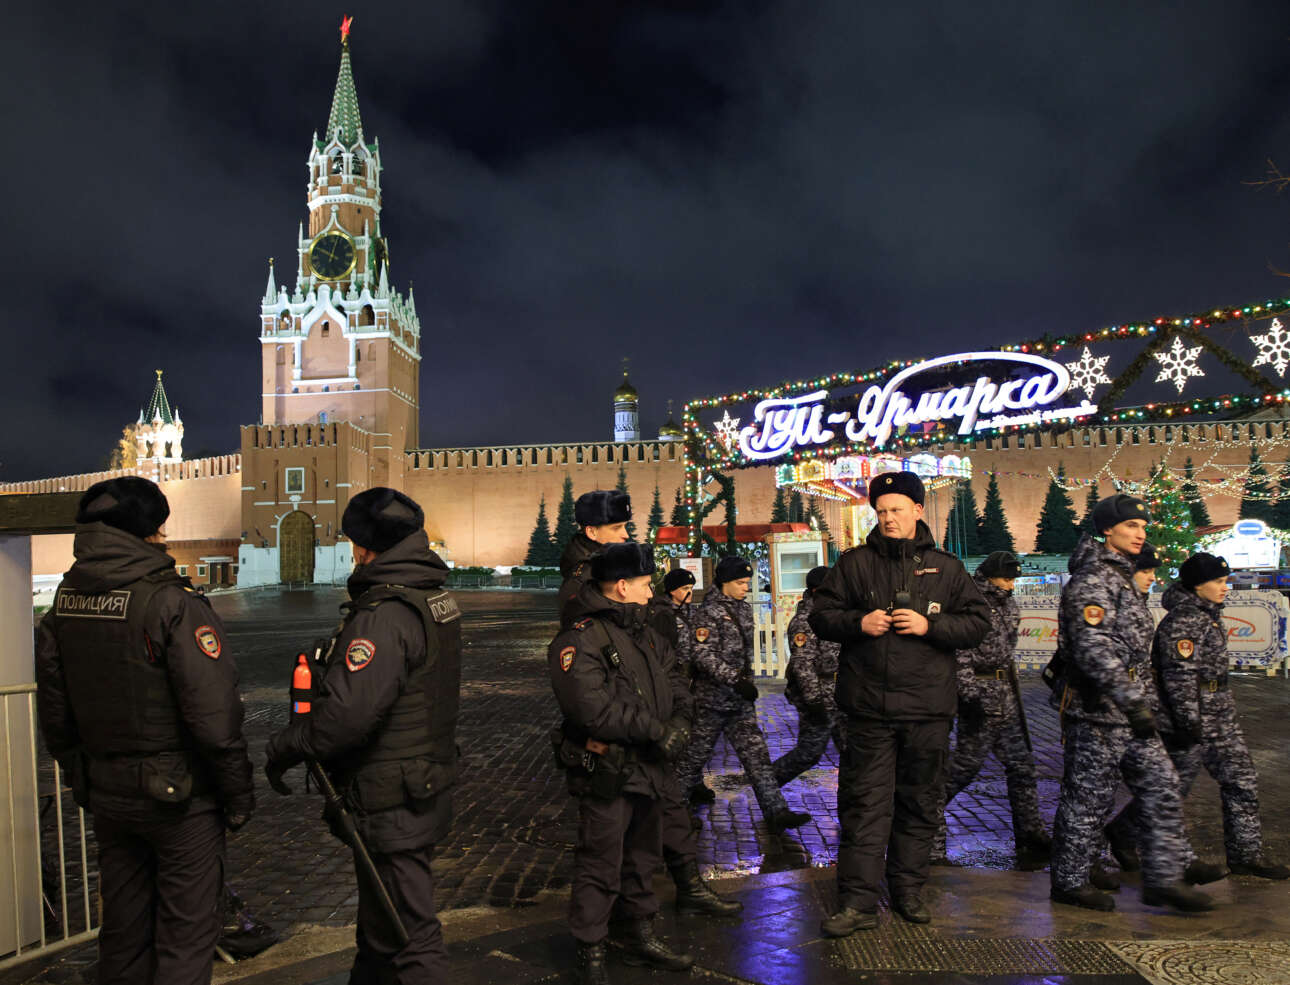 Μόσχα. Ισχυρές αστυνομικές δυνάμεις στην Κόκκινη Πλατεία, καθώς ο πόλεμος στην Ουκρανία κρύβει κινδύνους